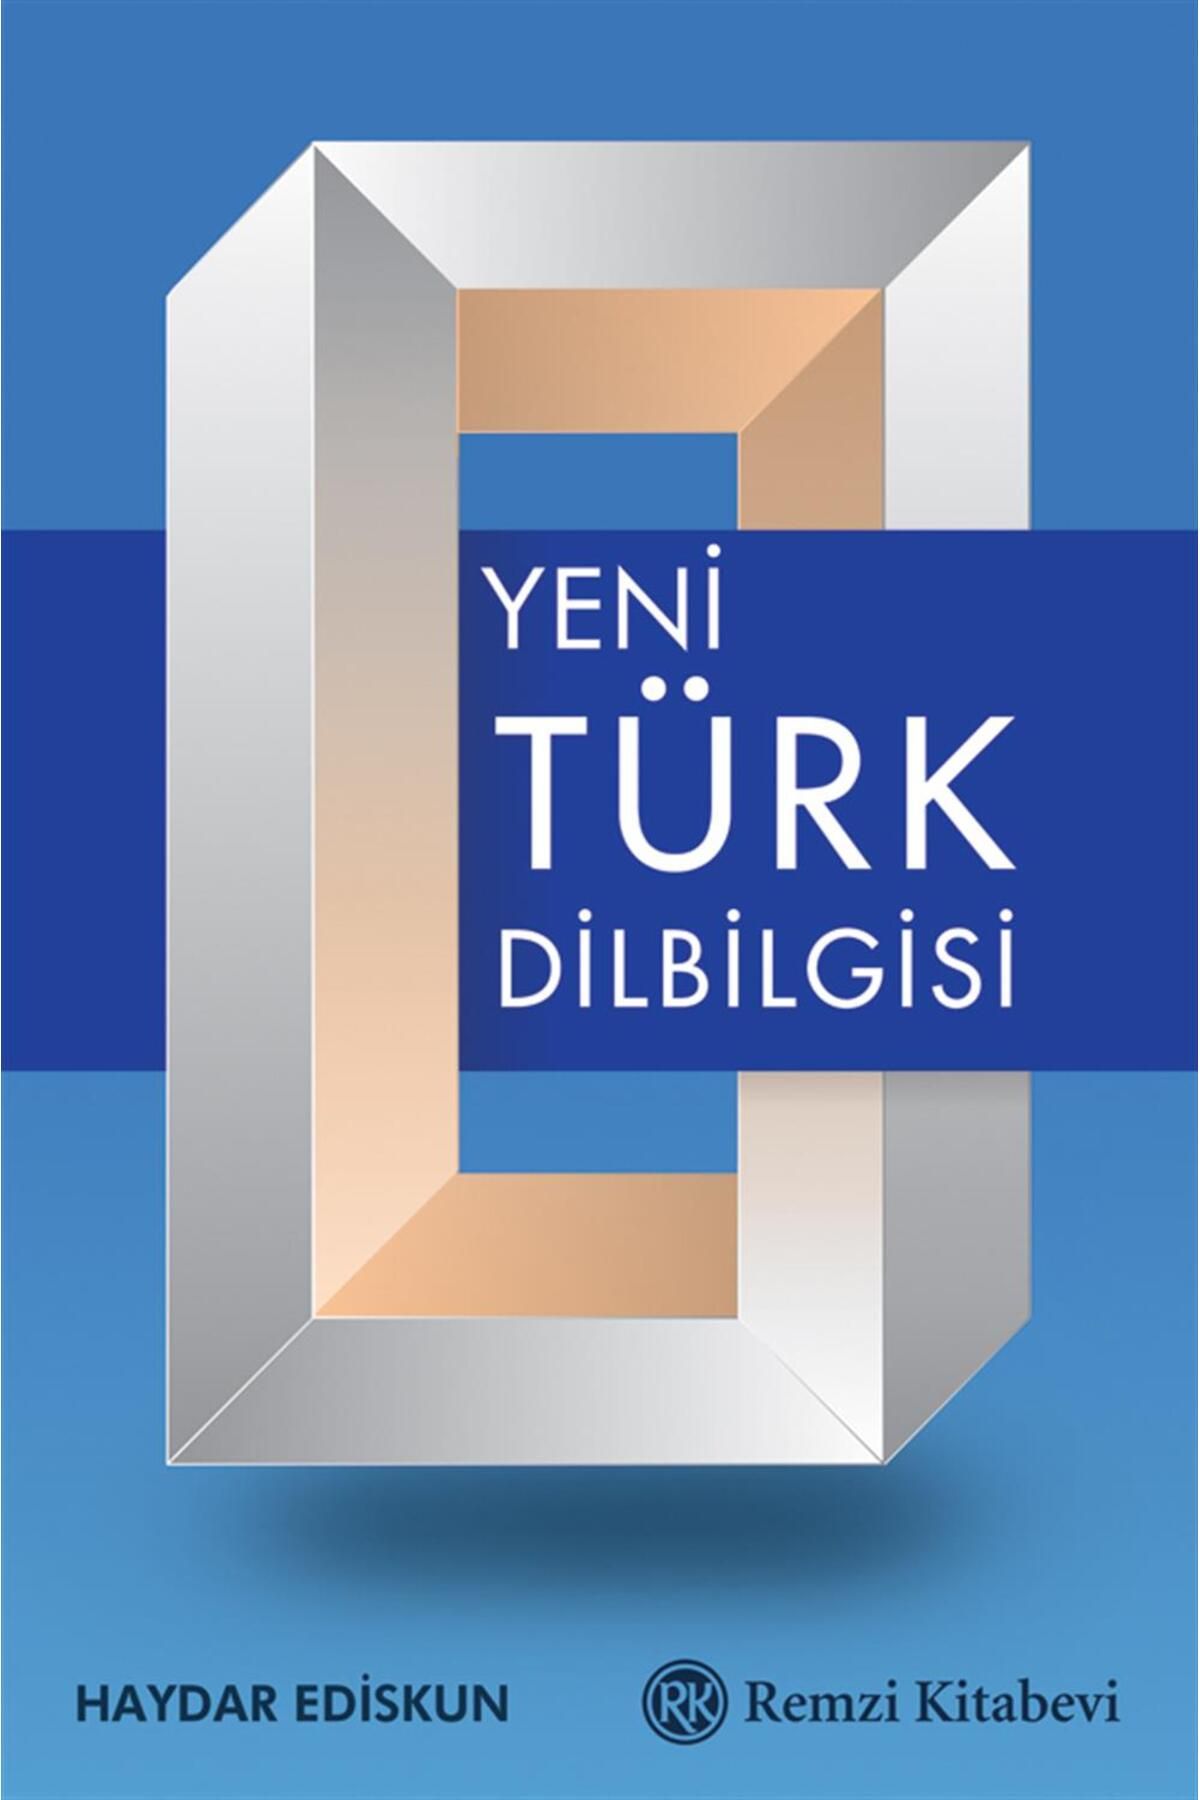 Remzi Kitabevi Yeni Türk Dilbilgisi